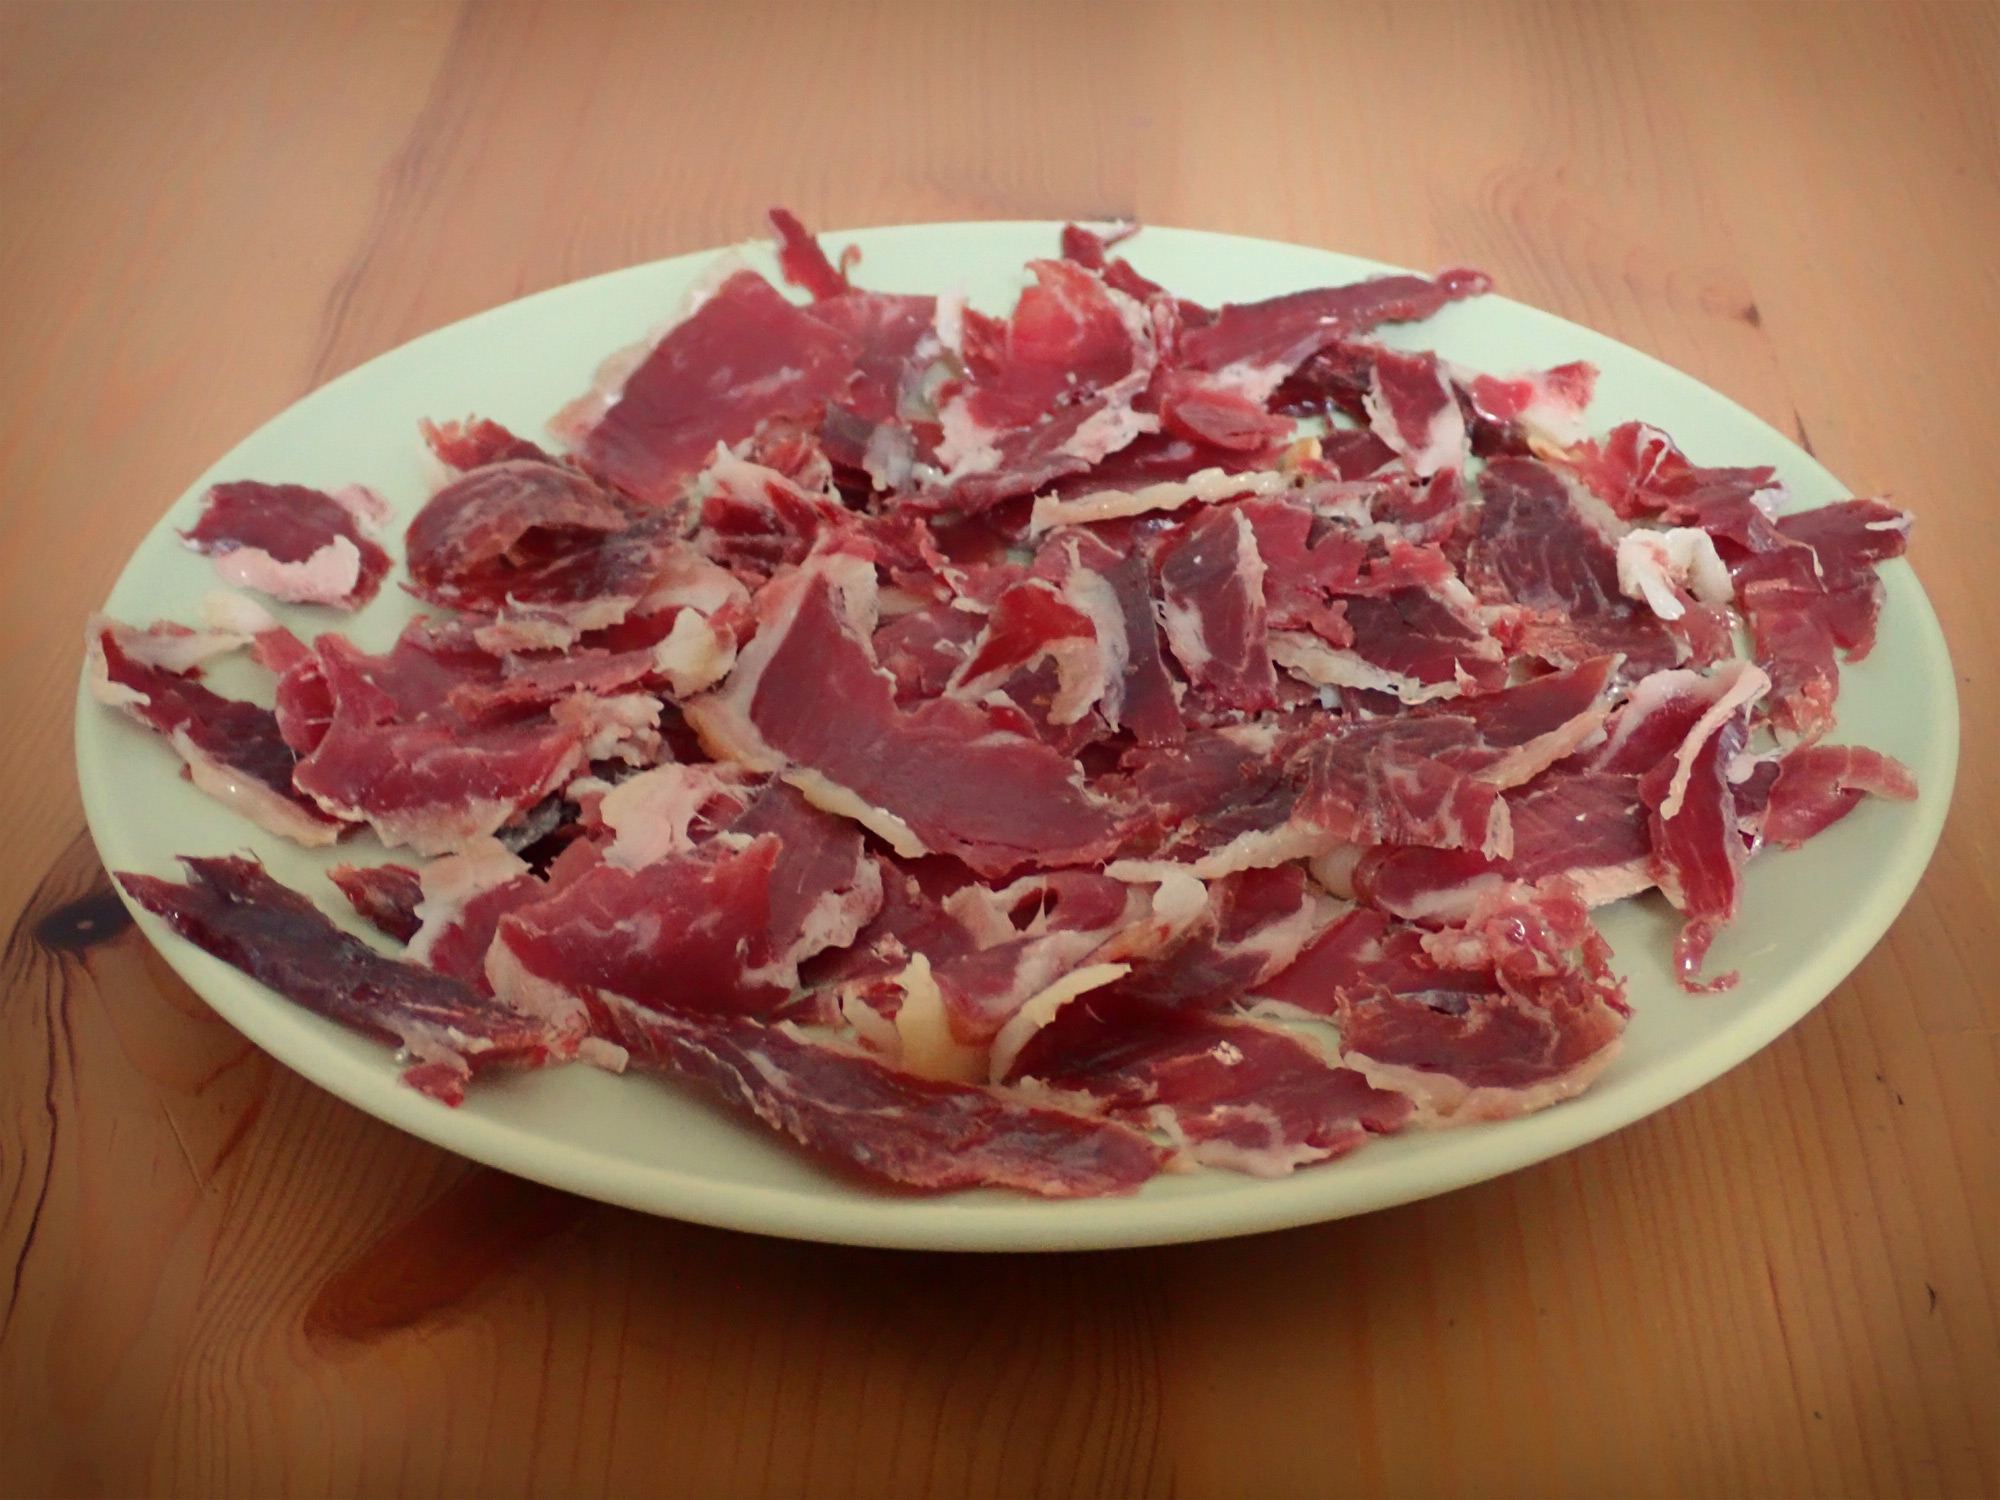 Slices of paleta ham